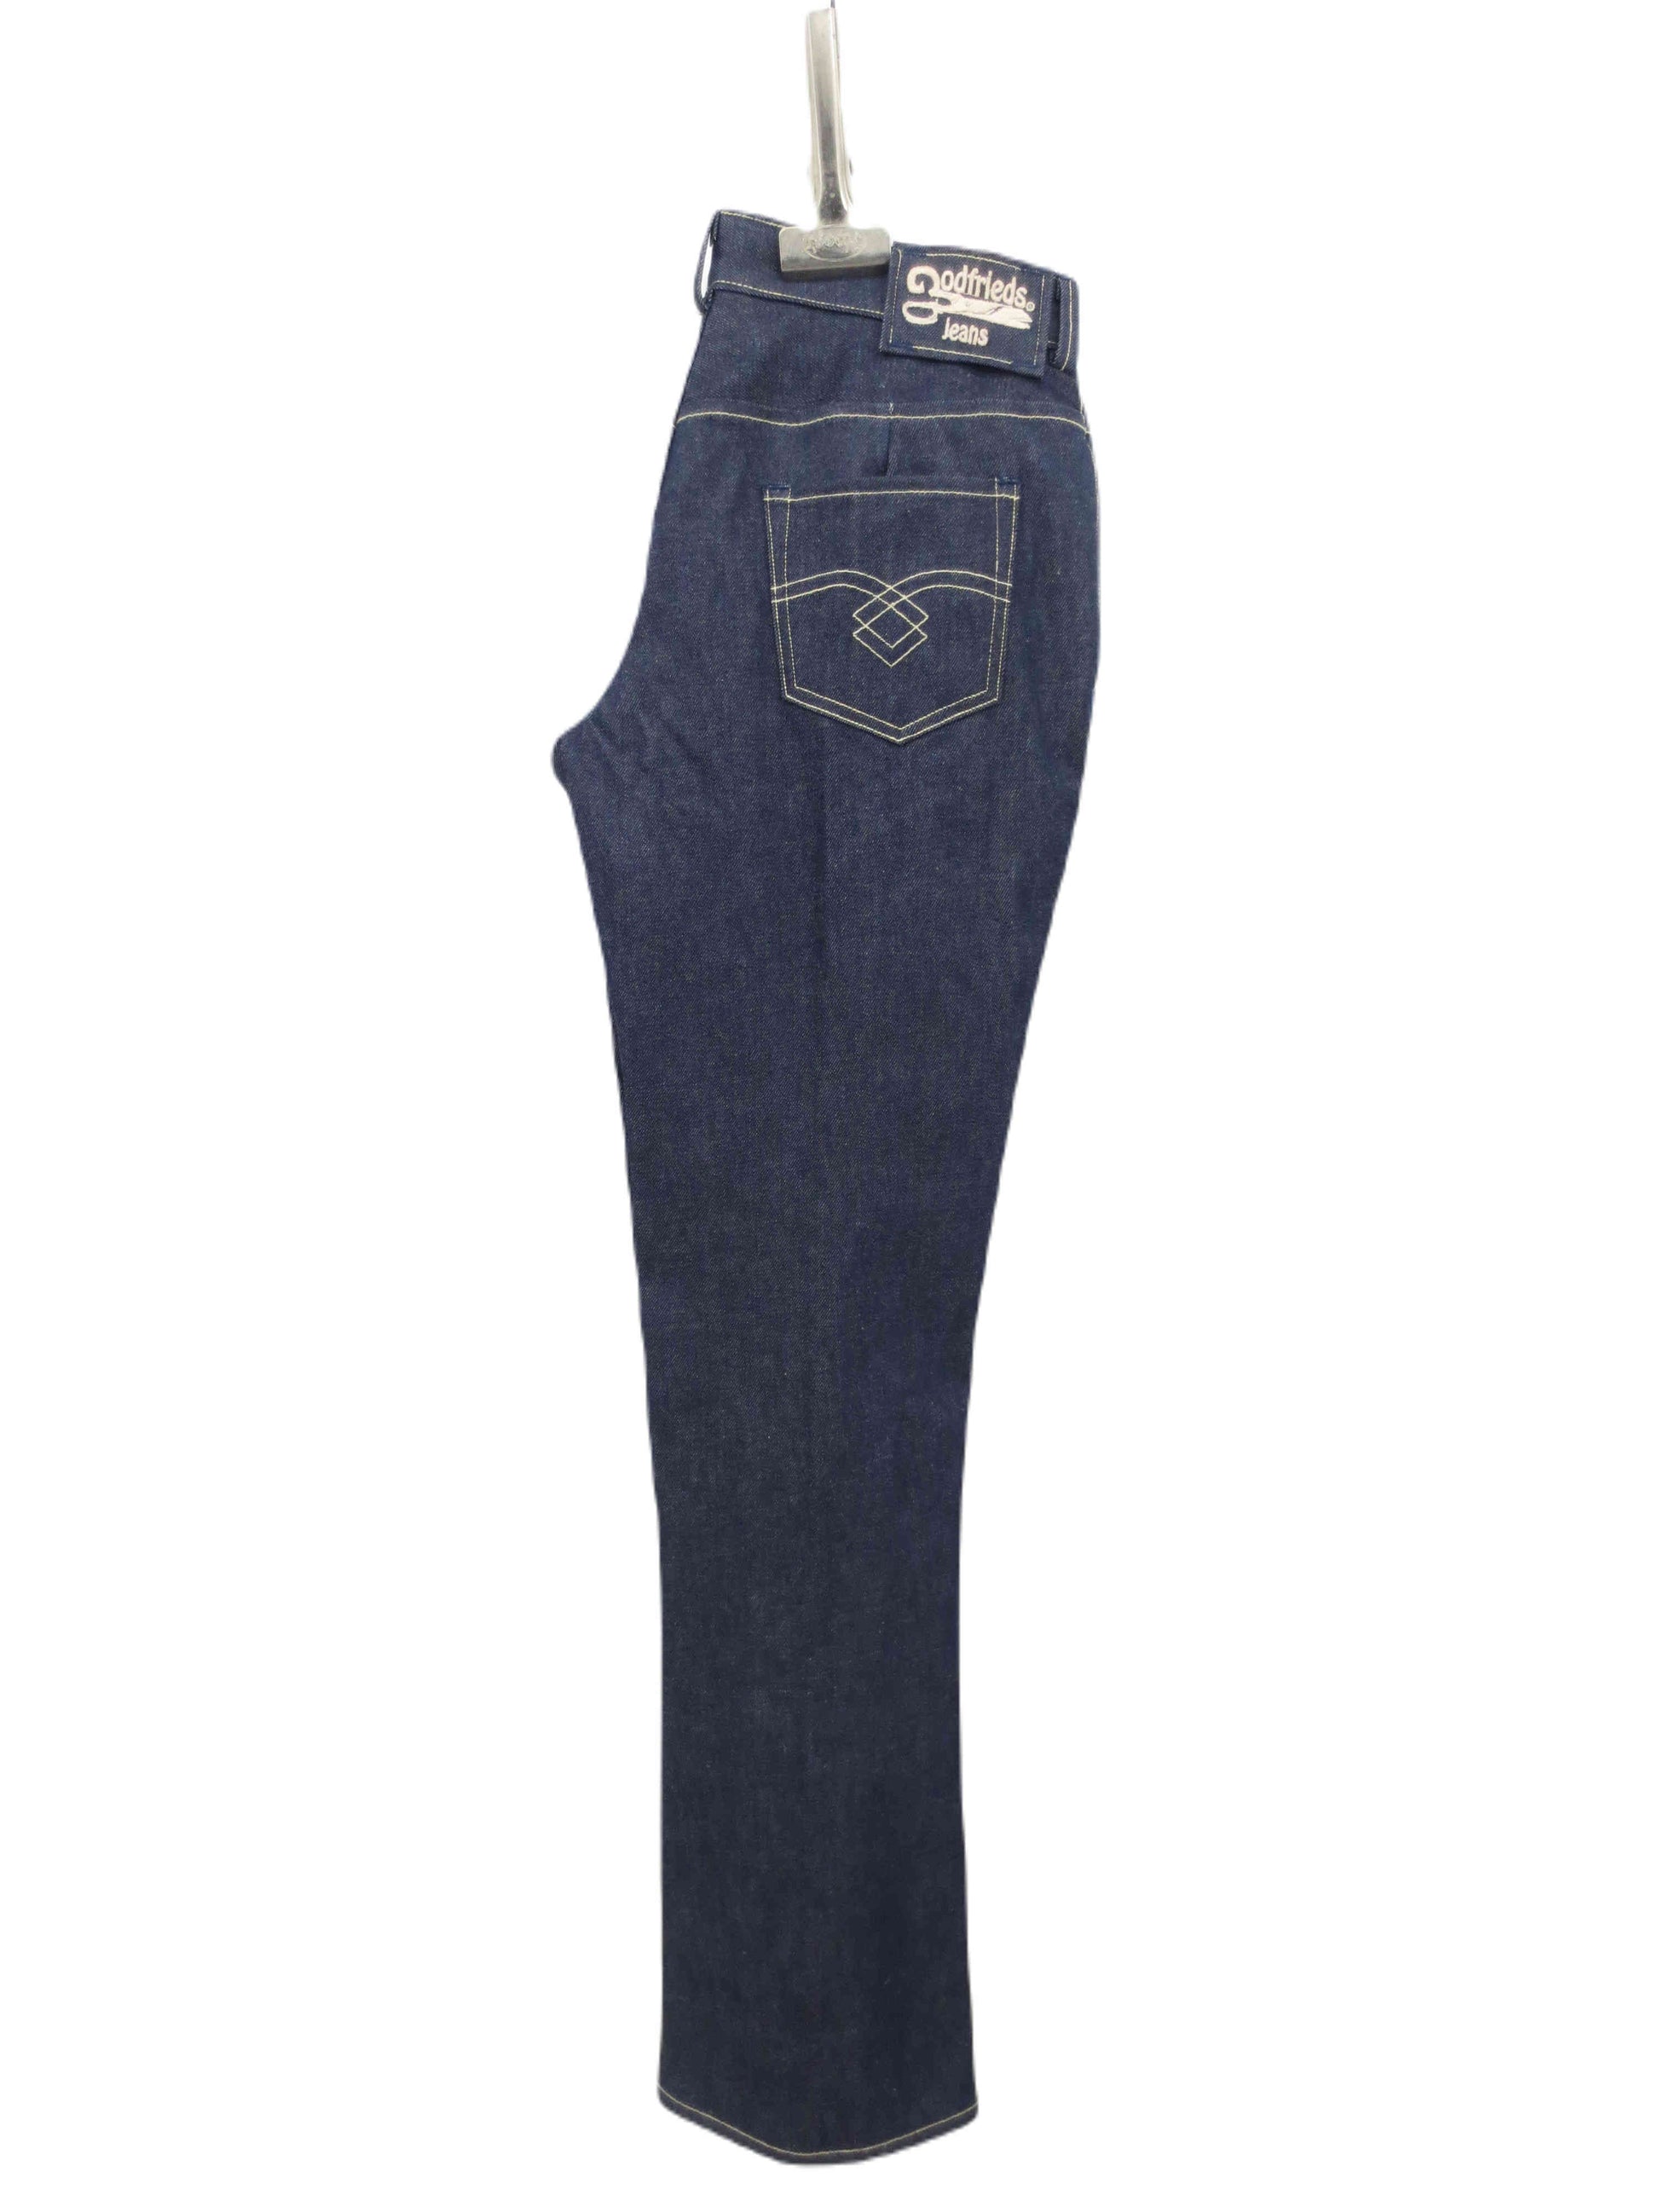 rug aanzicht model  2570  passende jeans